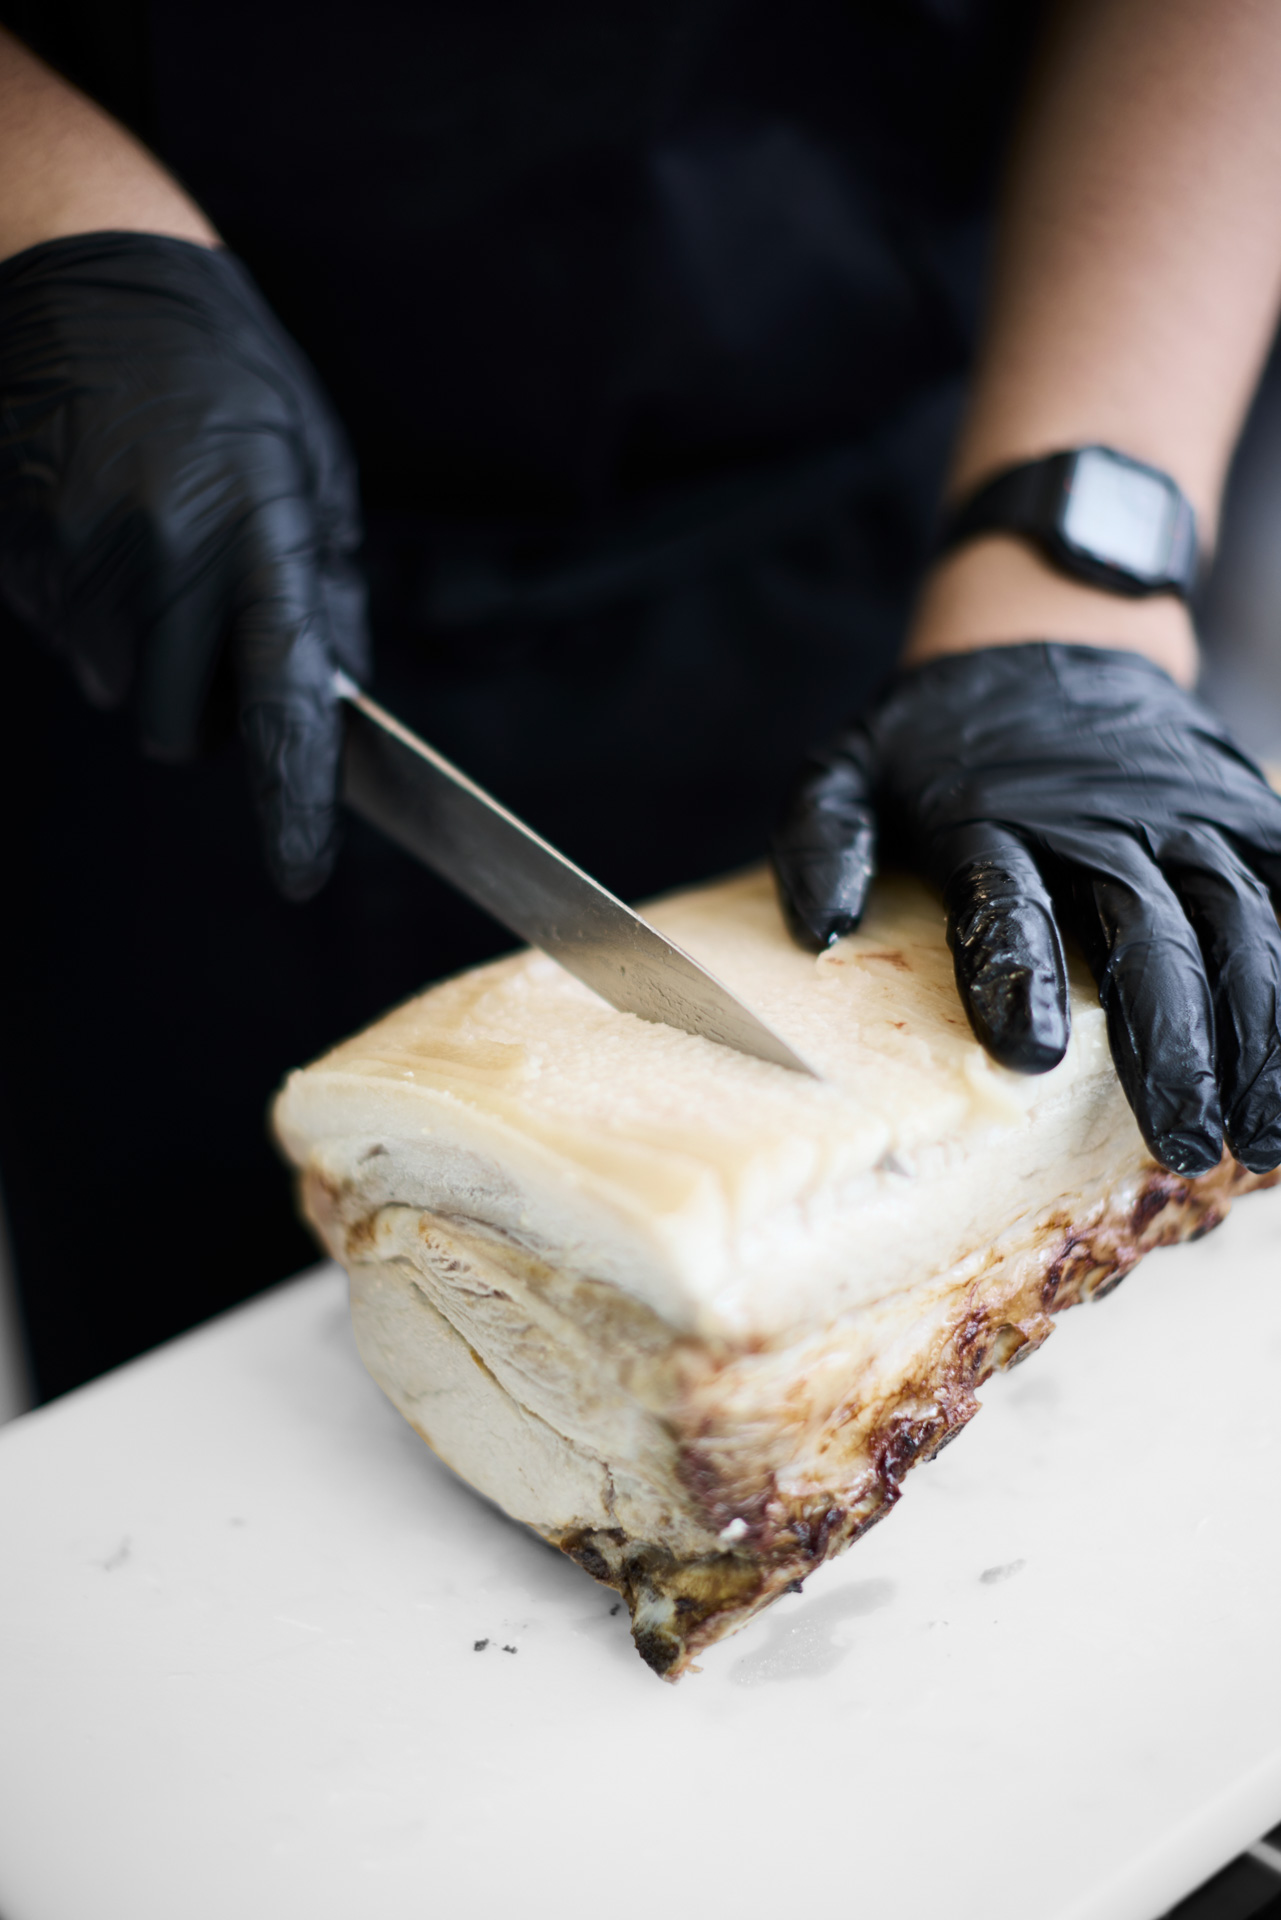 ZBC gourmetslagter med specialet slagtning - elev arbejder med udskæring af kød